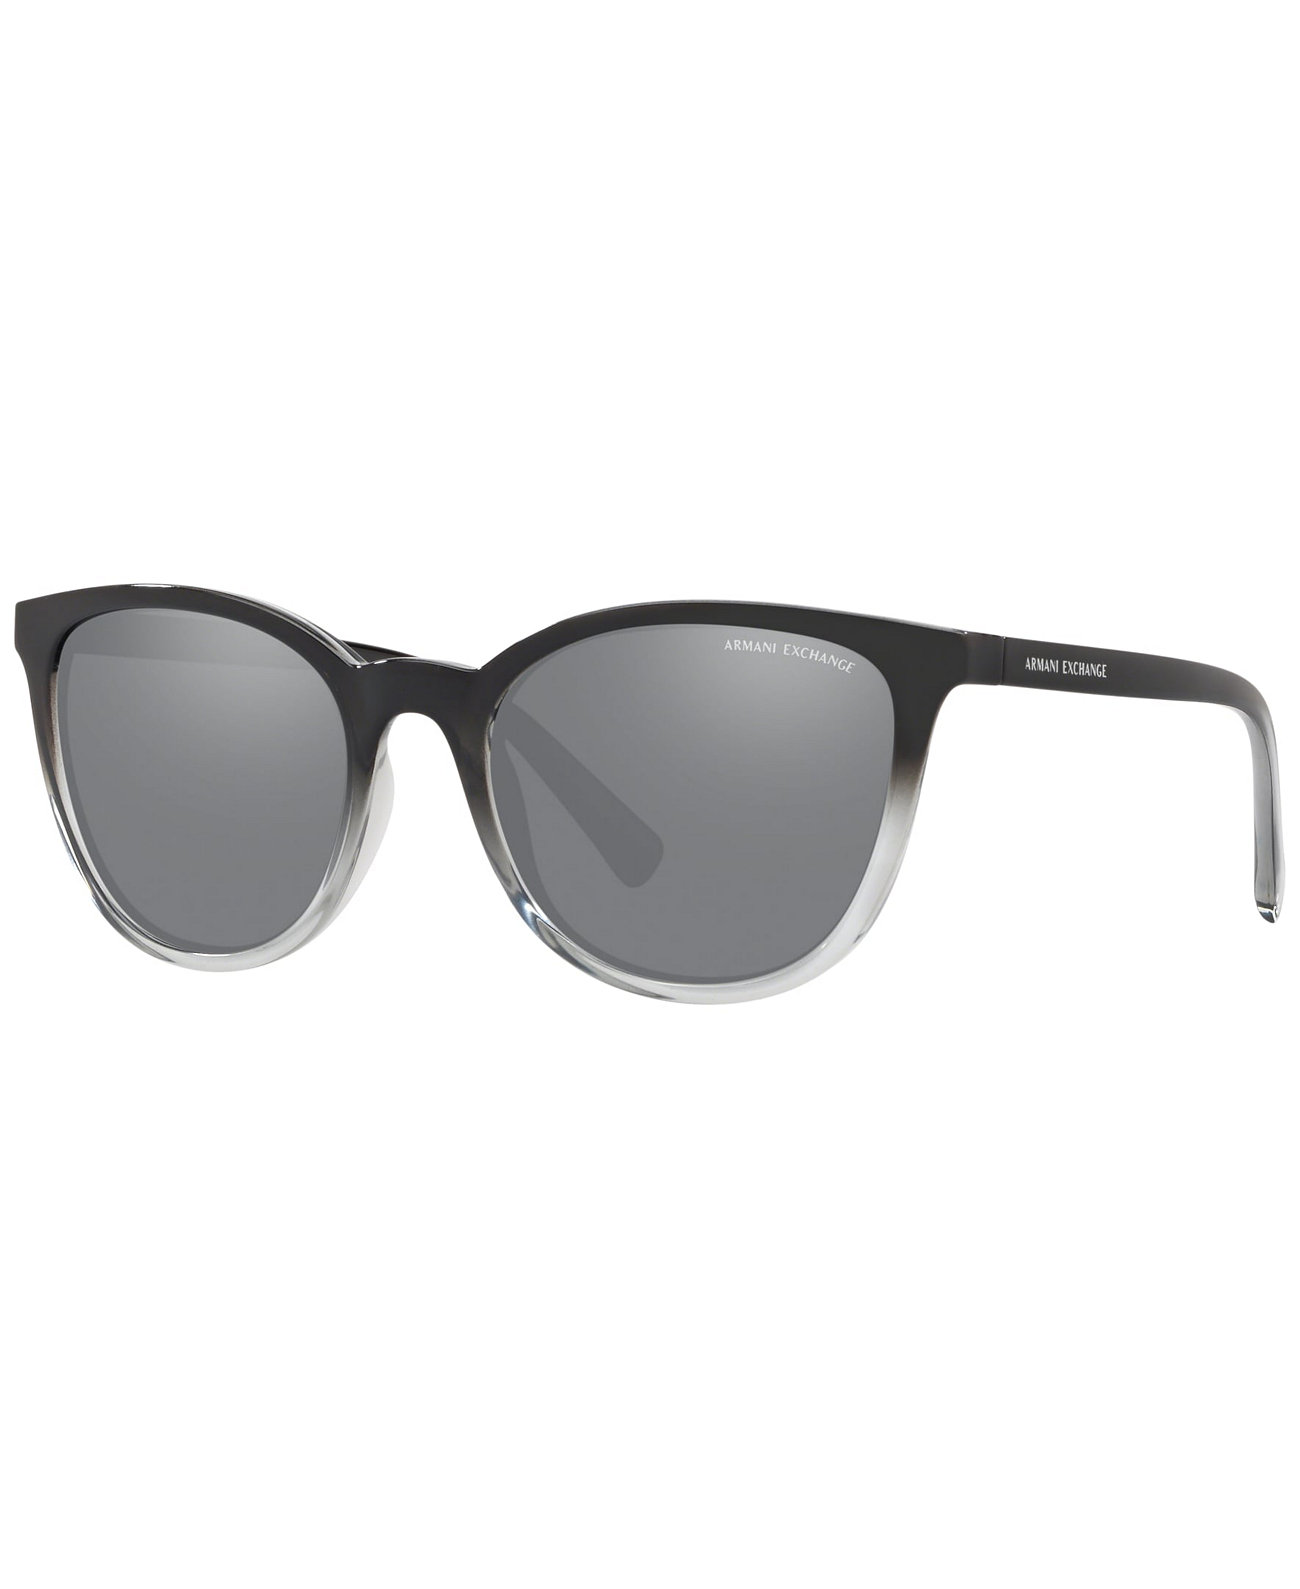 Женские солнцезащитные очки с низким мостиком, AX4077Sf 56 Armani